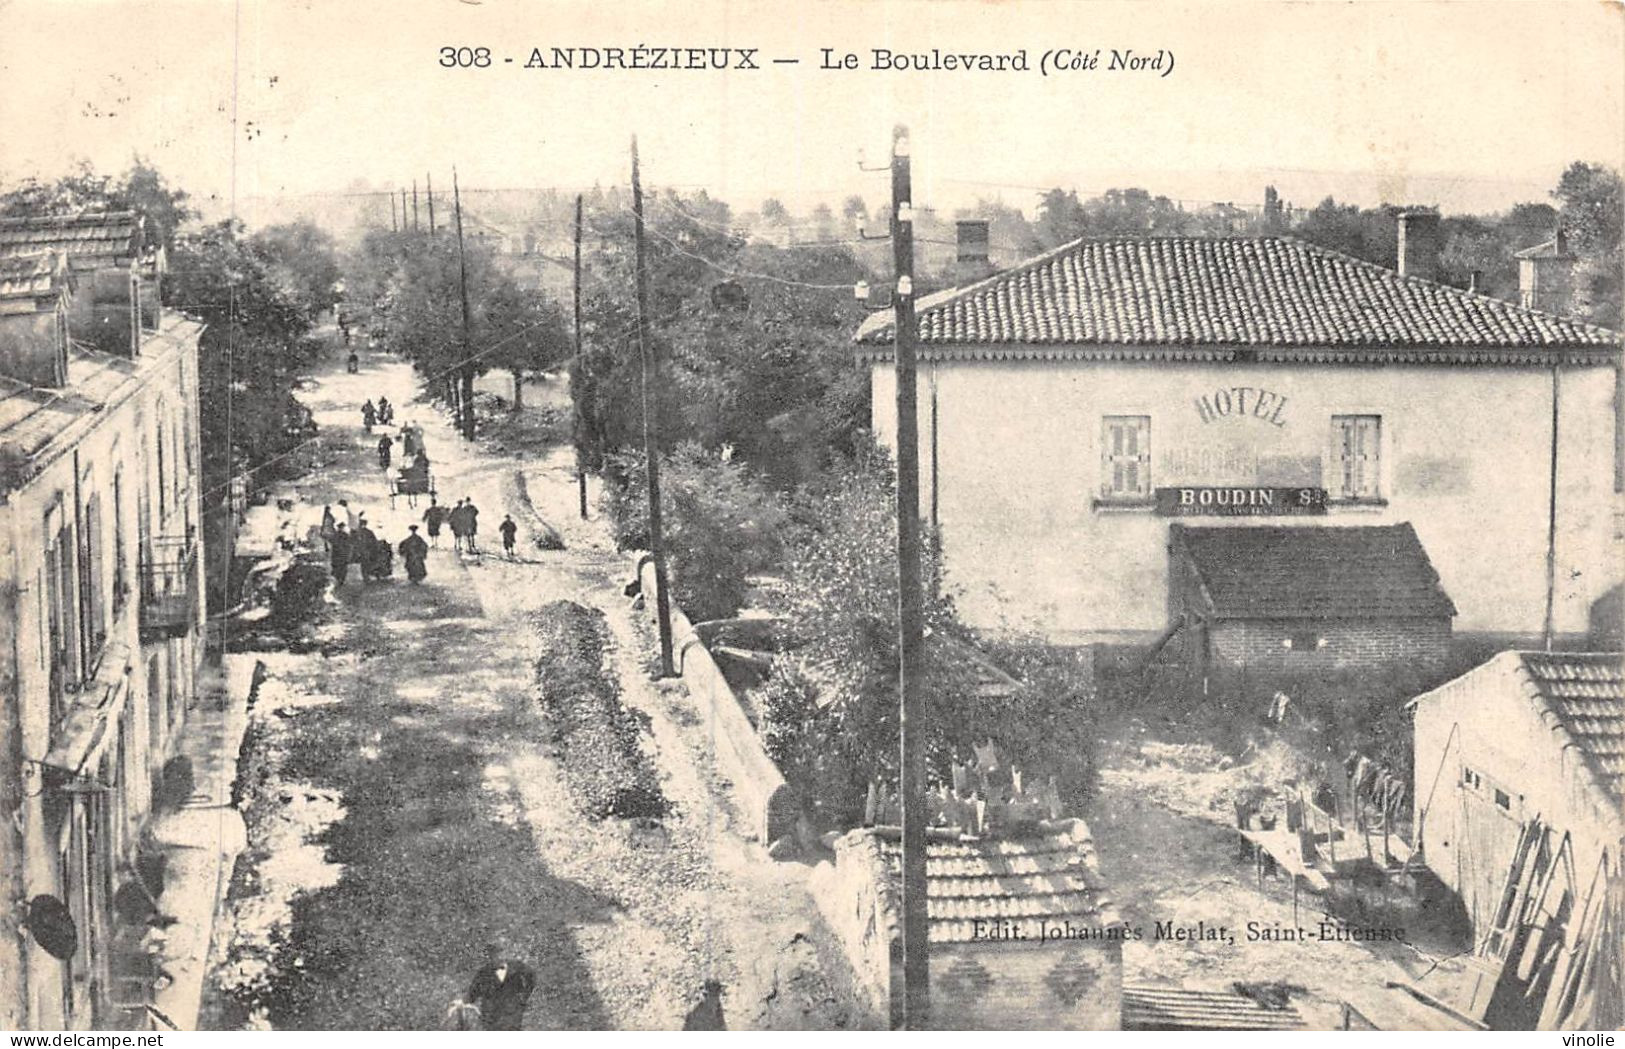 P-24-Mi-Is-978 : ANDREZIEUX. BOULEVARD - Andrézieux-Bouthéon